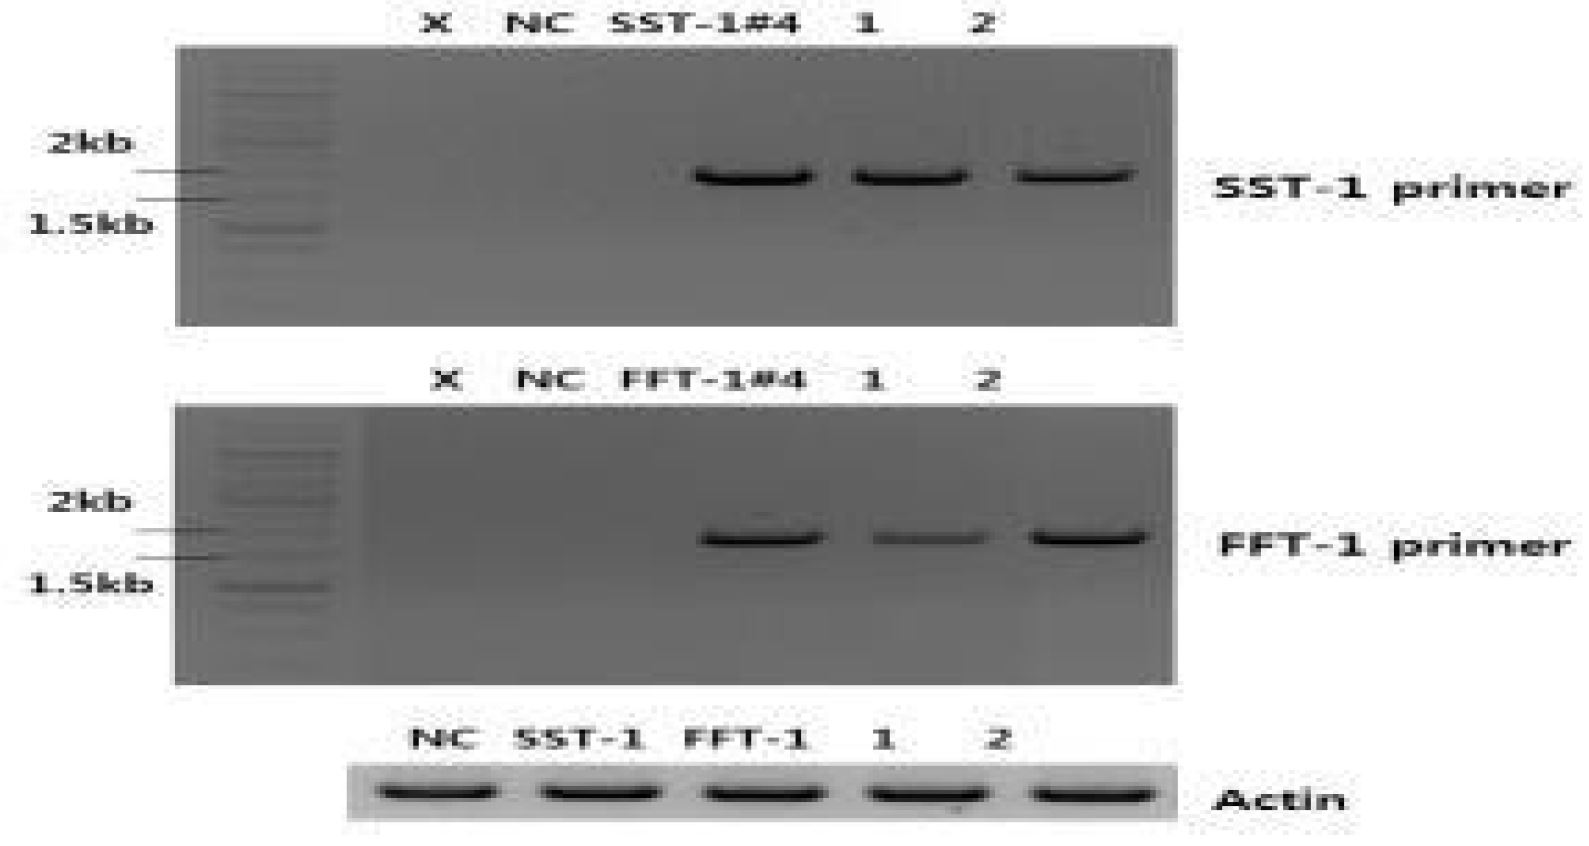 그림 1-21. RNA level 에서의 RT-PCR을 이용한 SST-1, FFT-1 발현 확인